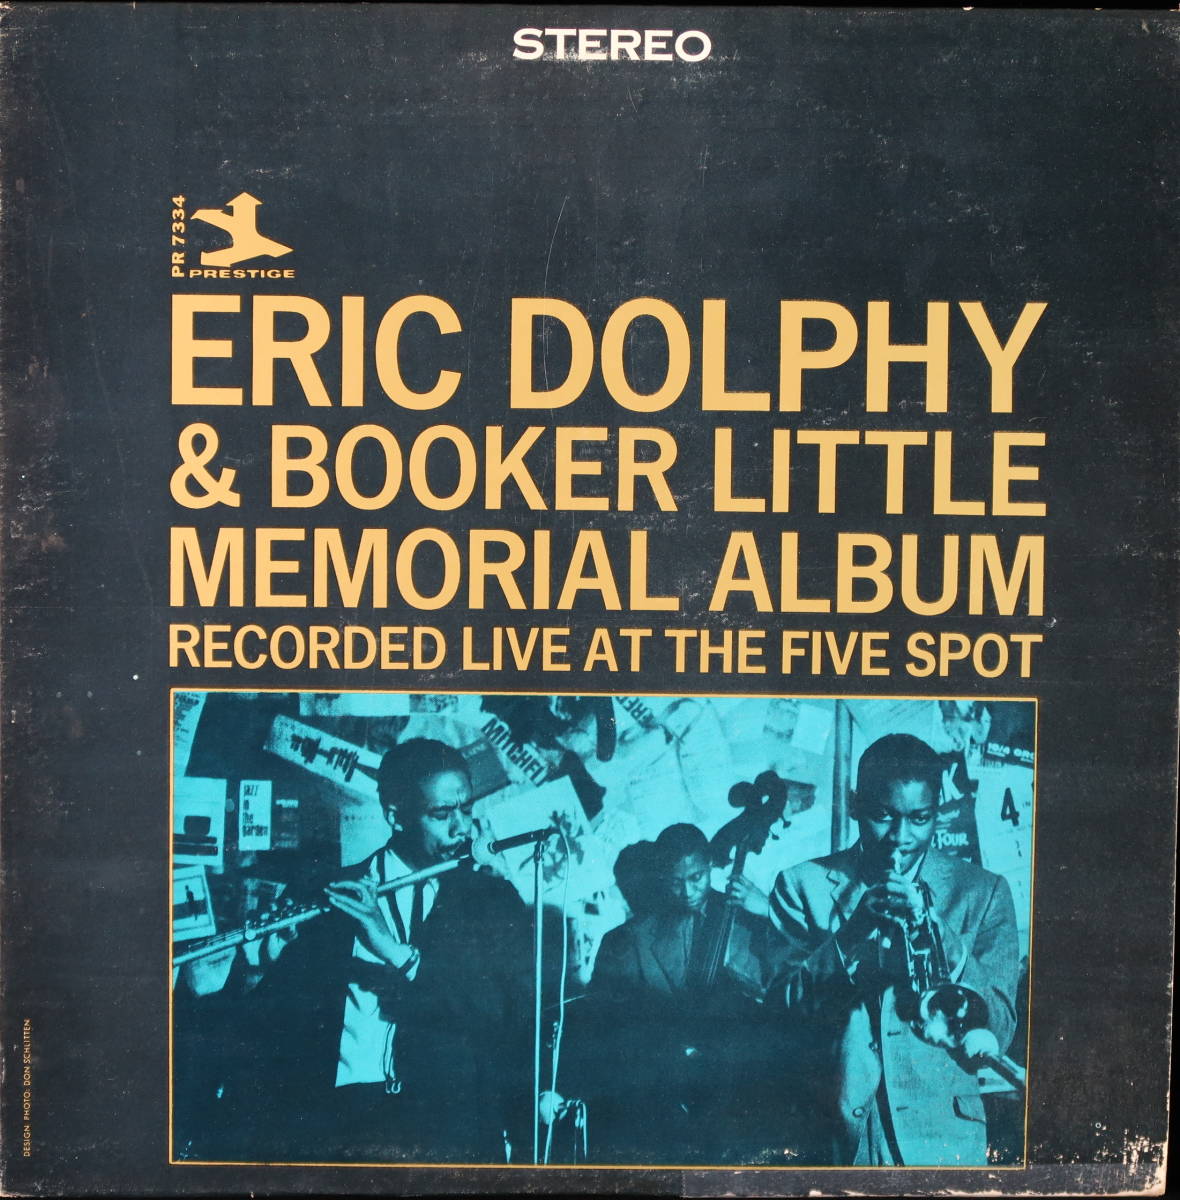 絶品】 DOLPHY ERIC [US.盤] & ALBUM MEMORIAL LITTLE BOOKER ジャズ